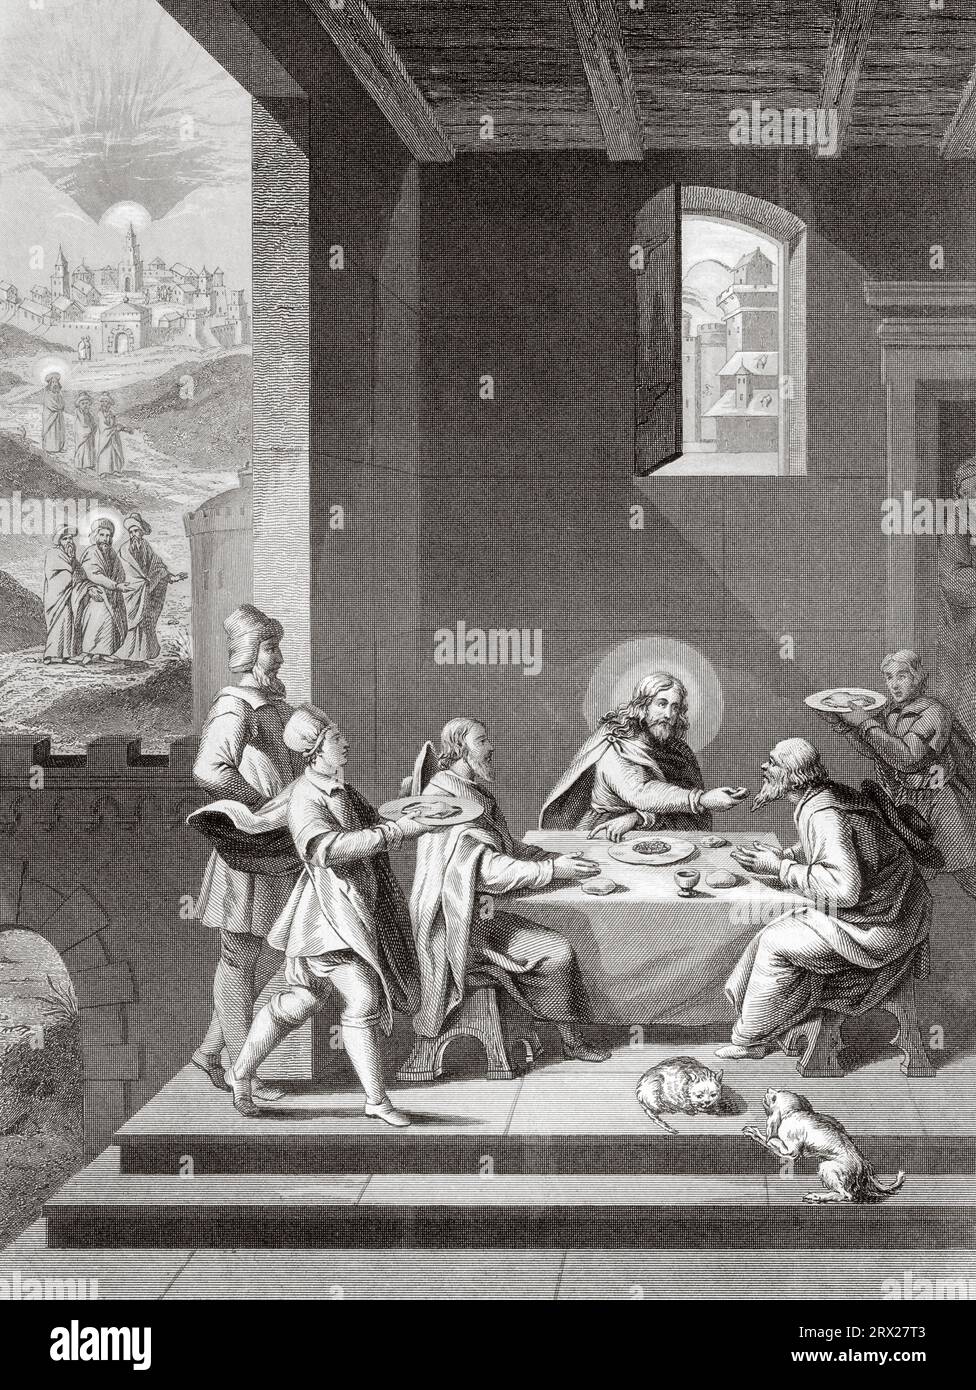 Cristo e i Pellegrini ad Emmaus. Illustrazione per la vita di nostro Signore Gesù Cristo scritta dai quattro evangelisti, 1853 Foto Stock